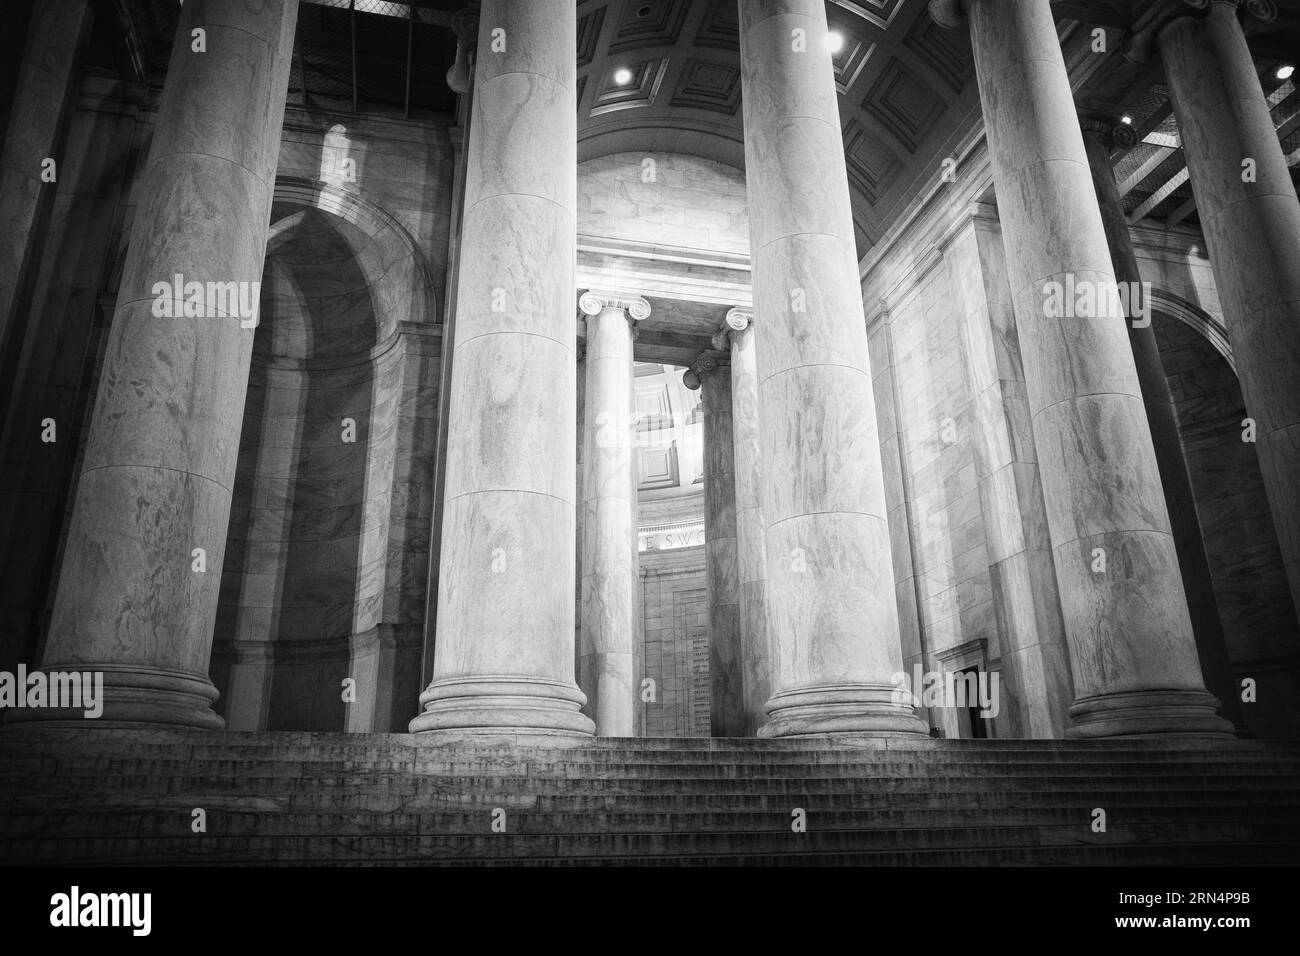 WASHINGTON DC, États-Unis — Une photographie en noir et blanc du Jefferson Memorial. Le Jefferson Memorial est un hommage emblématique au troisième président américain, Thomas Jefferson. Surplombant le Tidal Basin, ce monument néoclassique témoigne de la contribution de Jefferson aux principes fondateurs de la nation. Banque D'Images